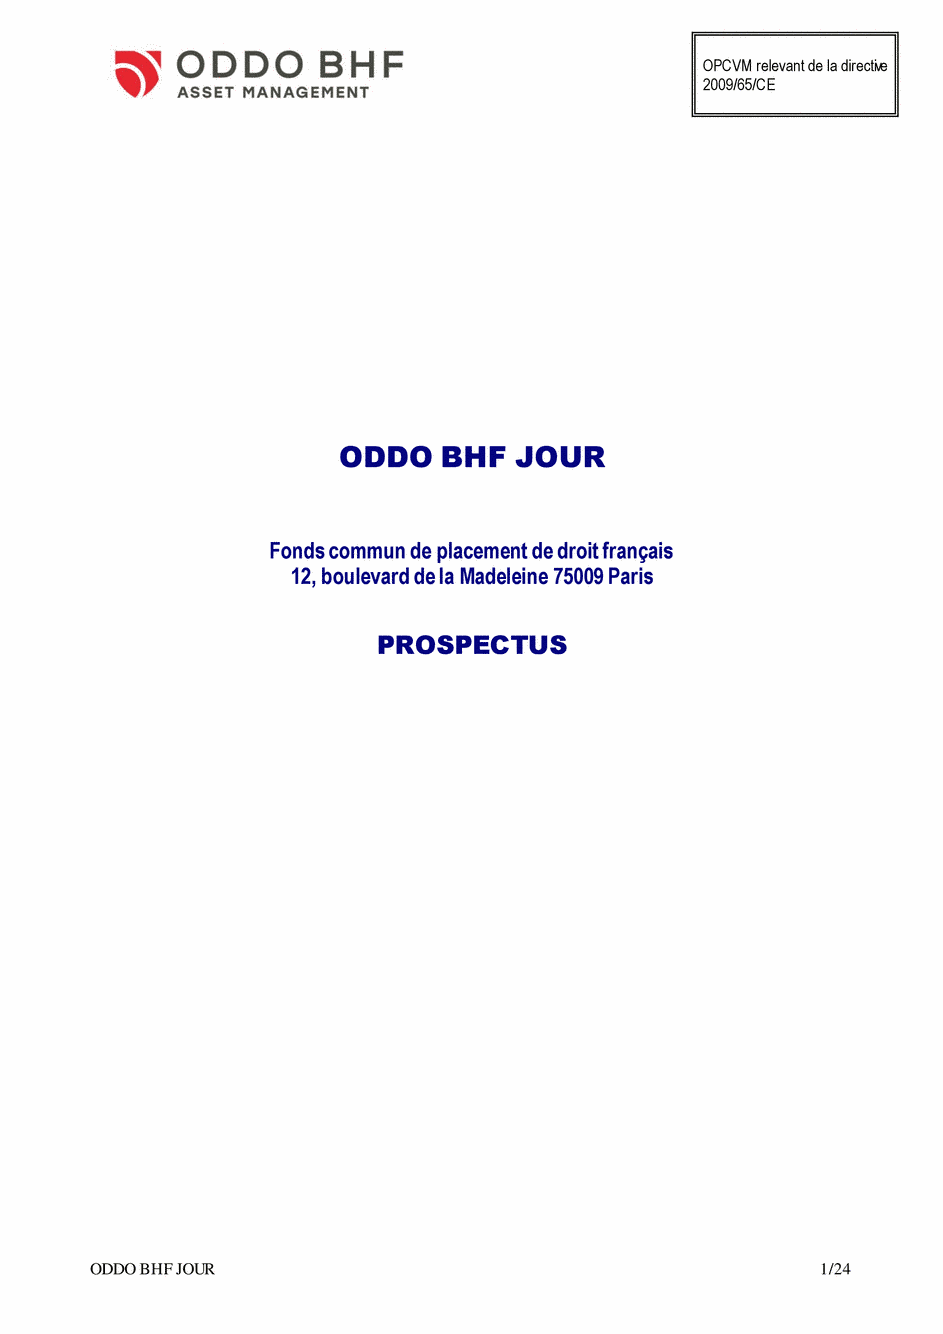 Prospectus ODDO BHF JOUR CI-EUR - 14/02/2020 - Français